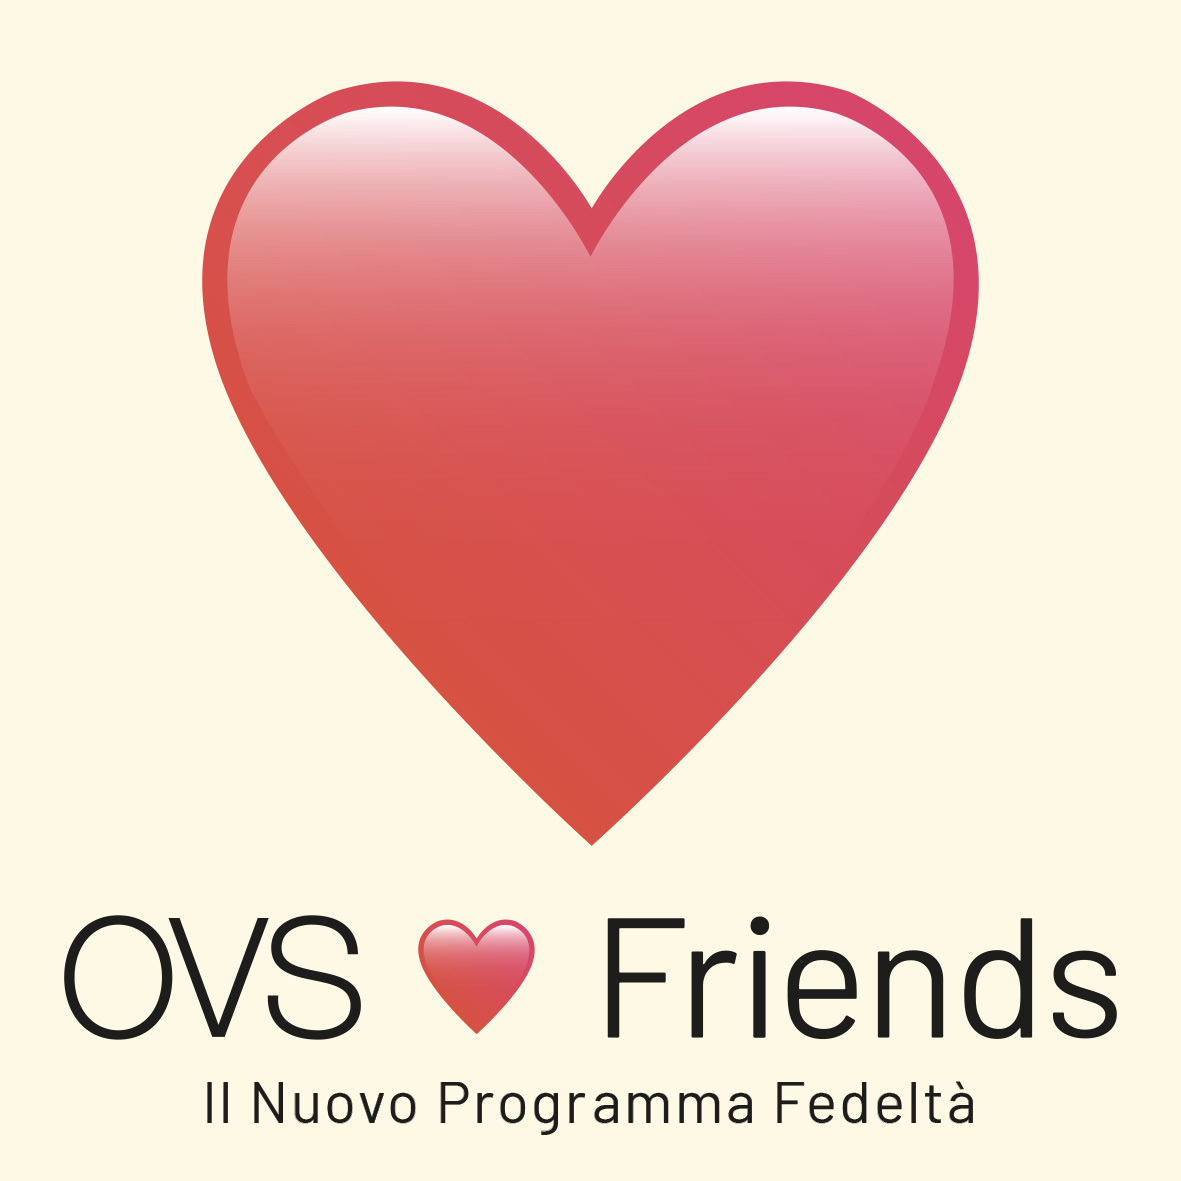 Ovs lancia la brand community "Ovsfriends" 